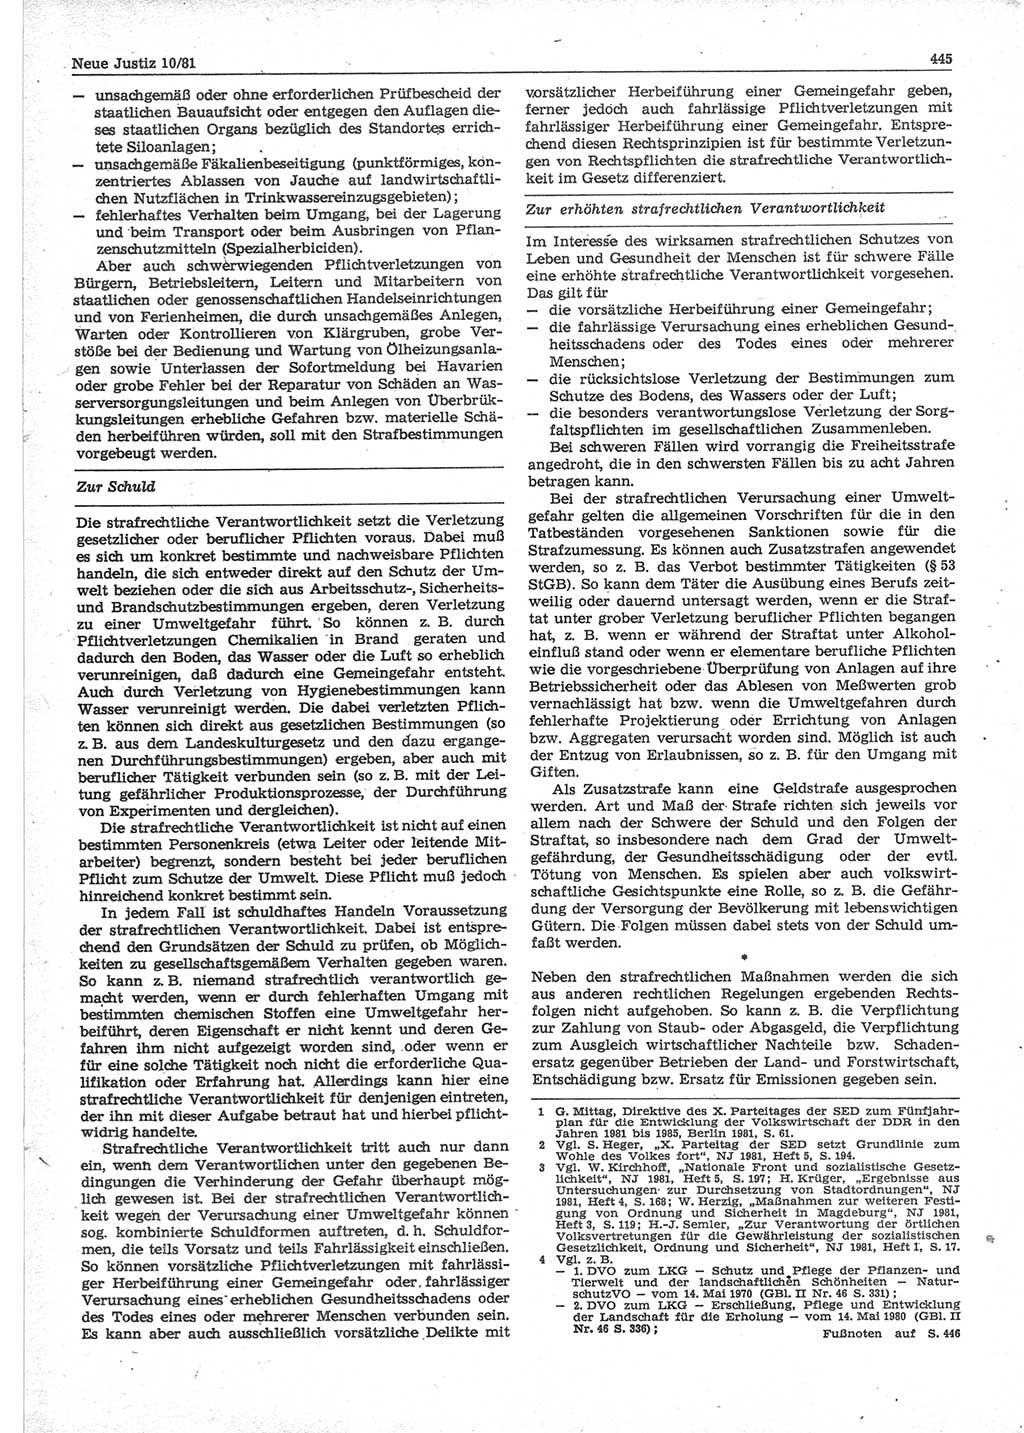 Neue Justiz (NJ), Zeitschrift für sozialistisches Recht und Gesetzlichkeit [Deutsche Demokratische Republik (DDR)], 35. Jahrgang 1981, Seite 445 (NJ DDR 1981, S. 445)